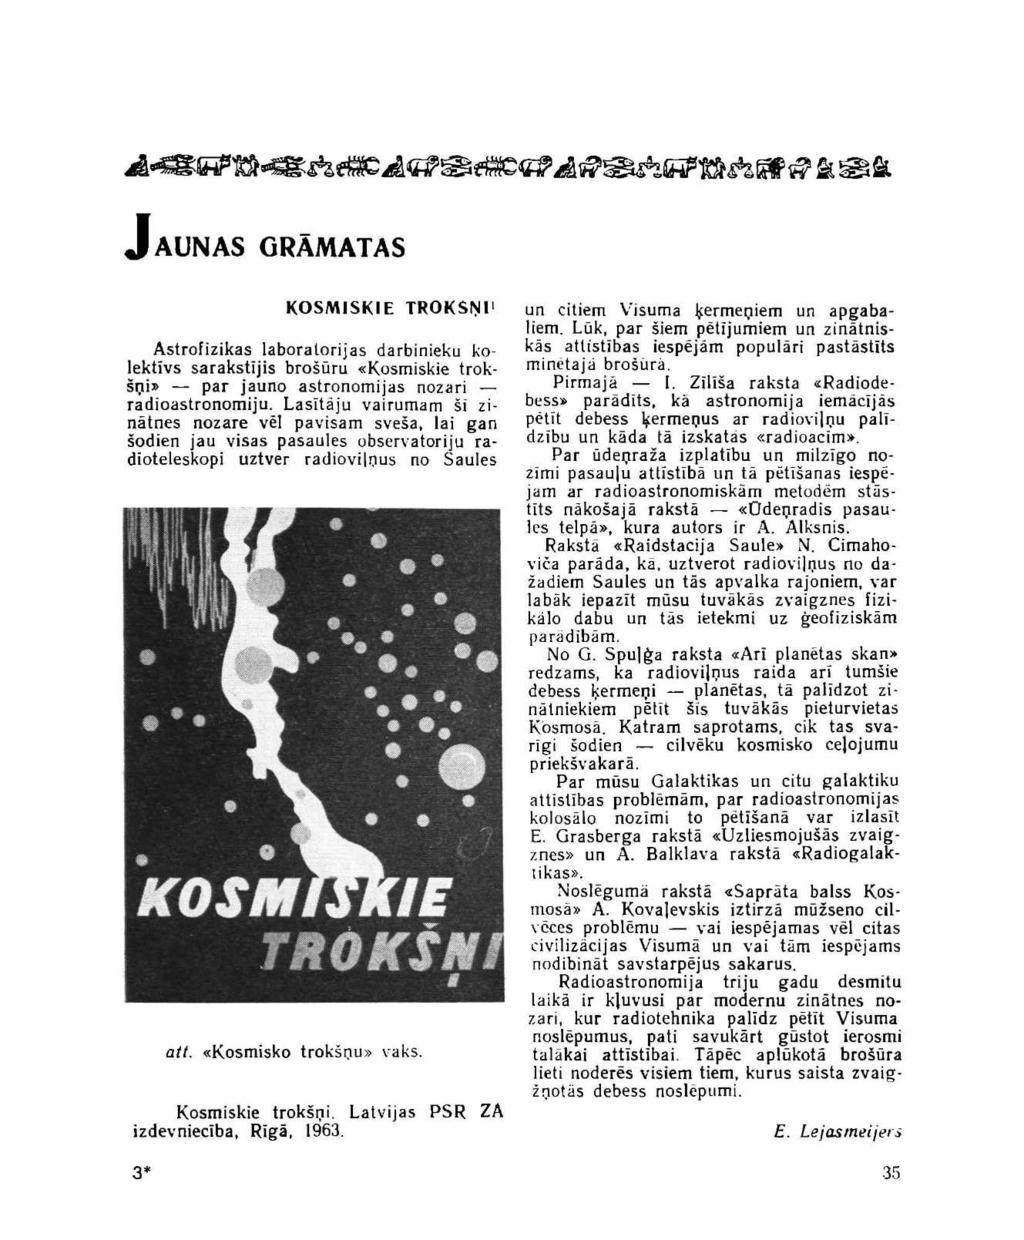 JAUNASGRĀMATAS KOSMISKIE TROKŠŅI' Astrofizikas laboratorijas darbinieku kolektīvs sarakstījis brošūru «Kosmiskie trokšņi» par jauno astronomijas nozari radioastronomiju.